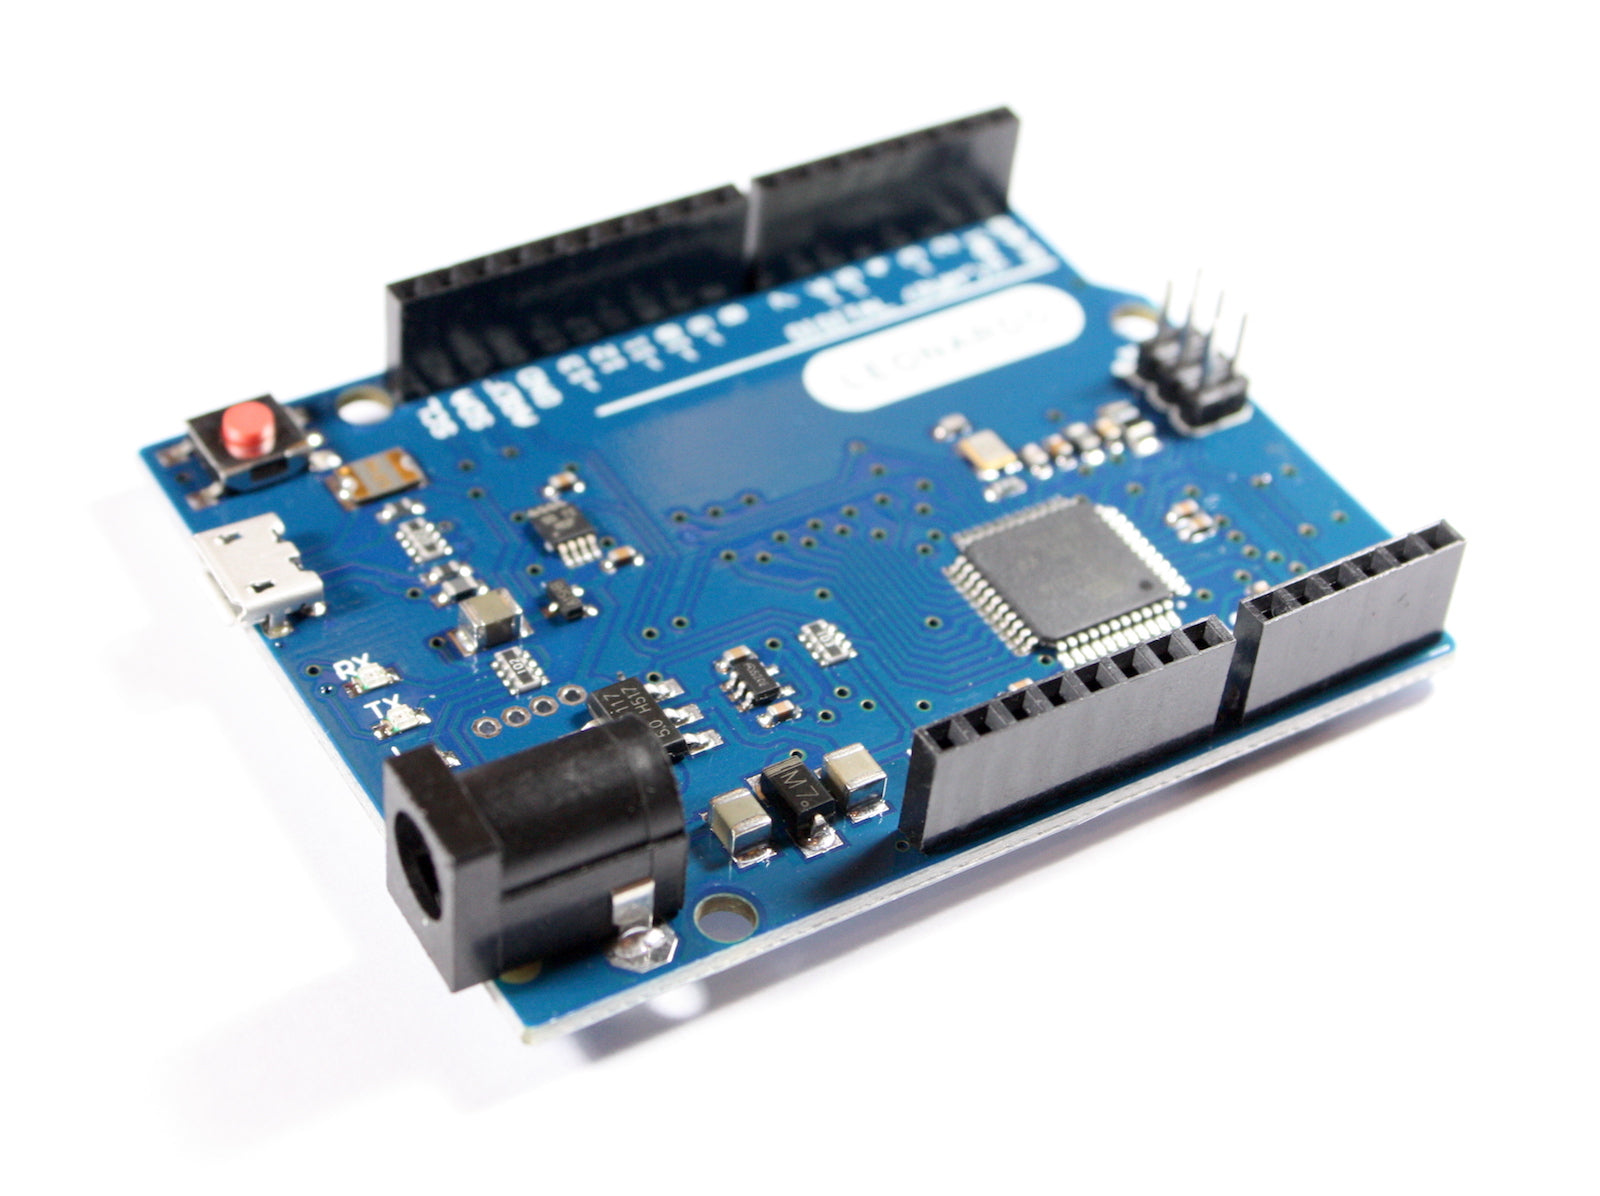 Leonardo Module with ATmega32U4 and USB Cable, Arduino compatible